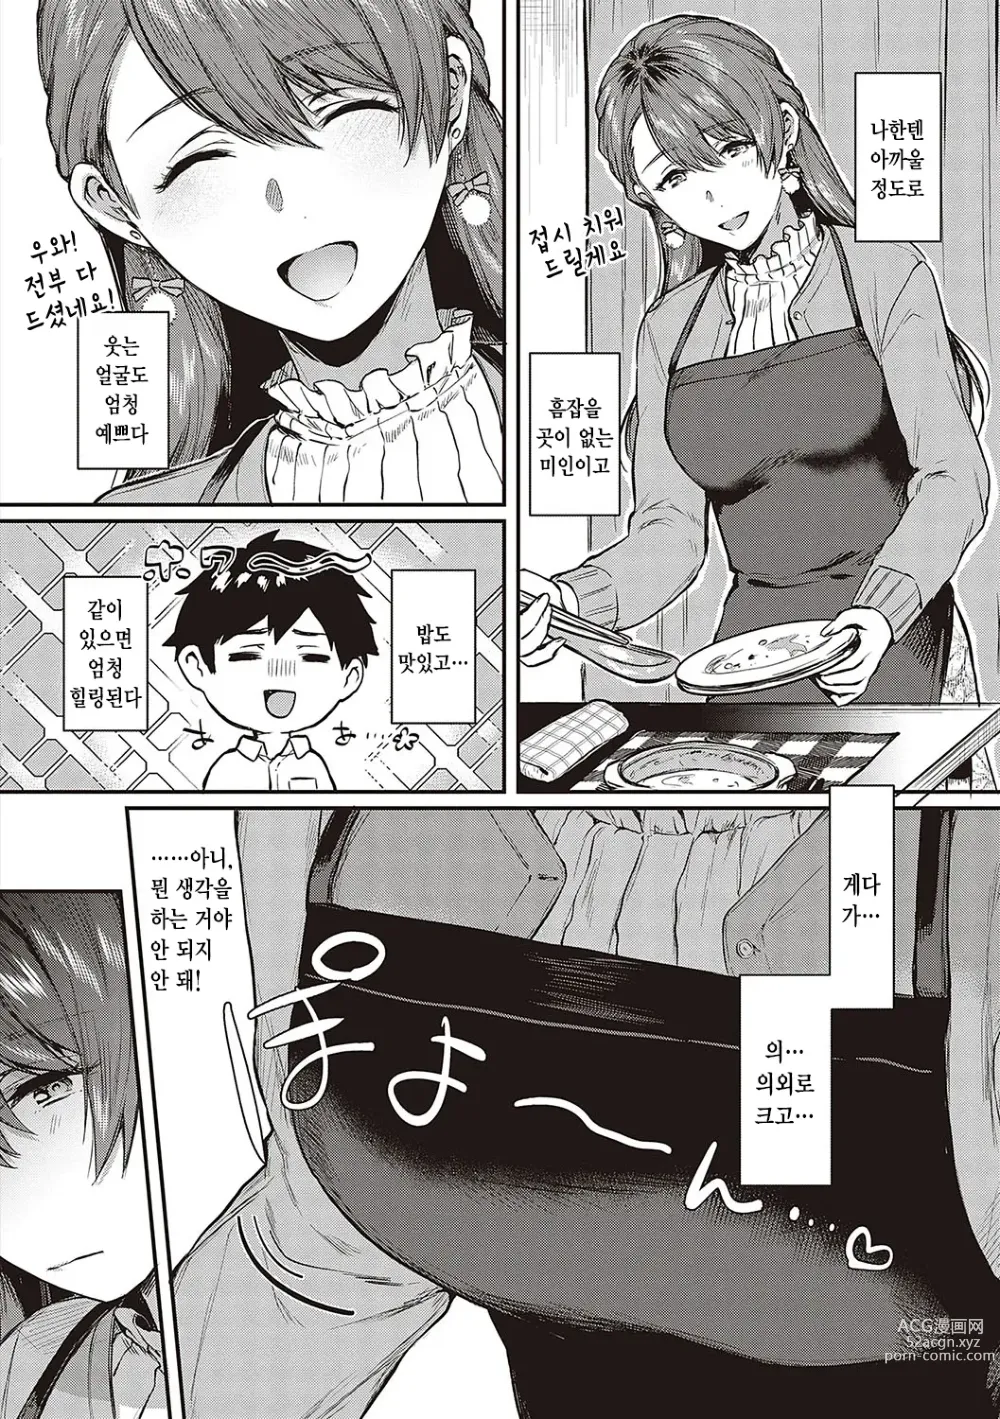 Page 9 of manga 짐승스런 임모럴리즘